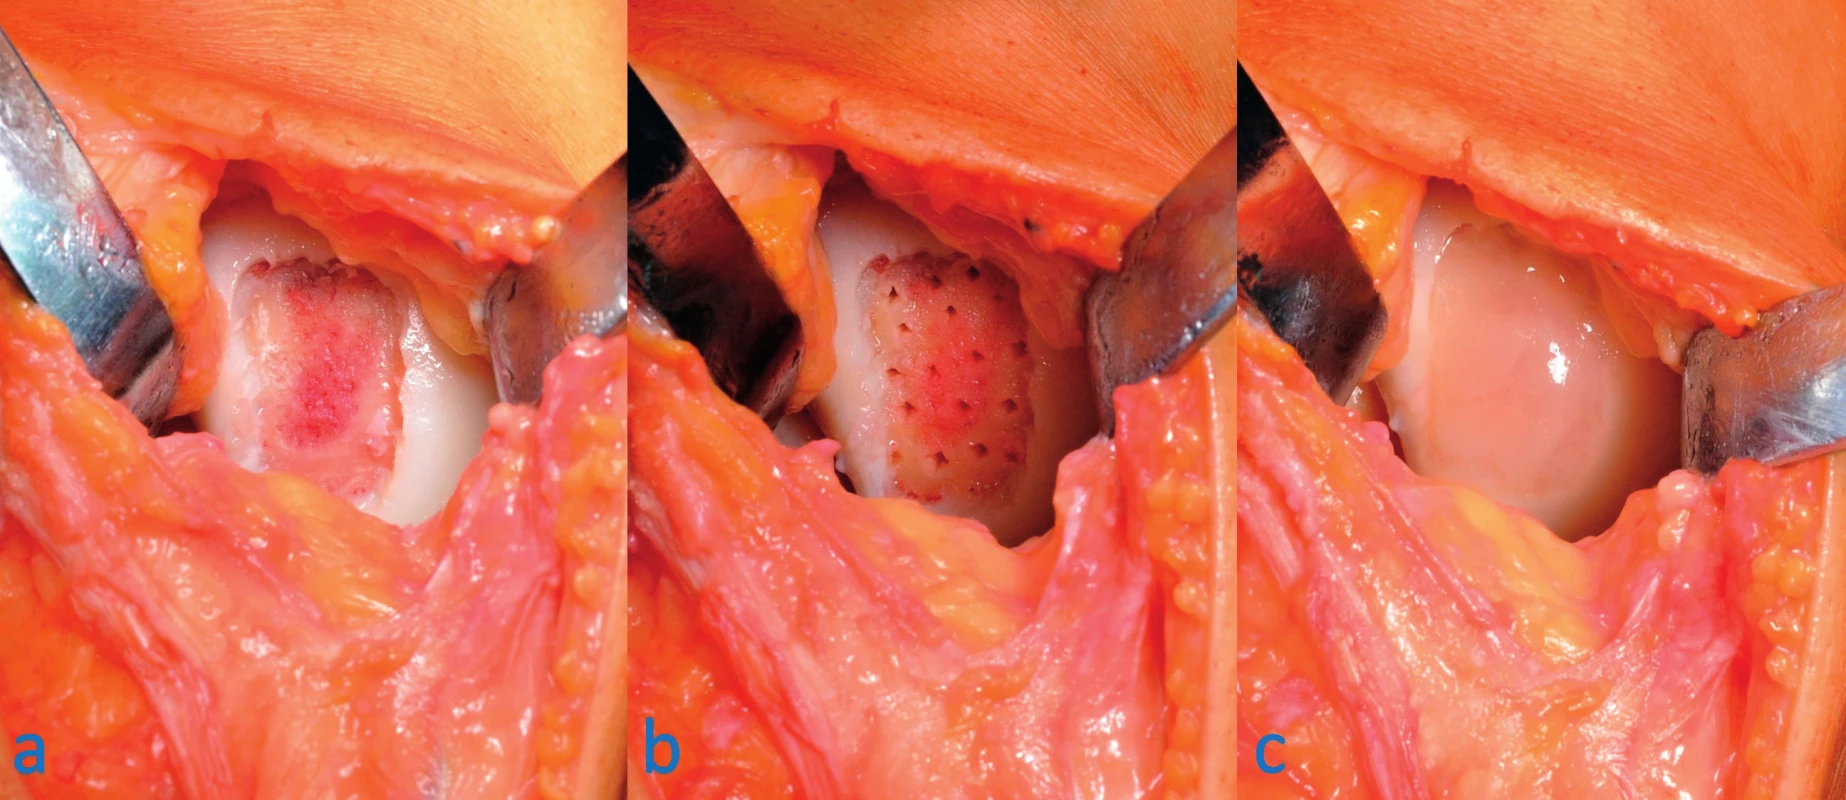 Ošetření chondrálního defektu mediálního kondylu femuru pravého kolene modifikovanou AMIC technikou: a – ze spodiny a okrajů
defektu odstraněna poškozená chrupavka, b – na spodině defektu provedeny mikrofraktury pomocí šídla, c – výsledný stav po implantaci
scaffoldu a zalití okrajů tkáňovým lepidlem